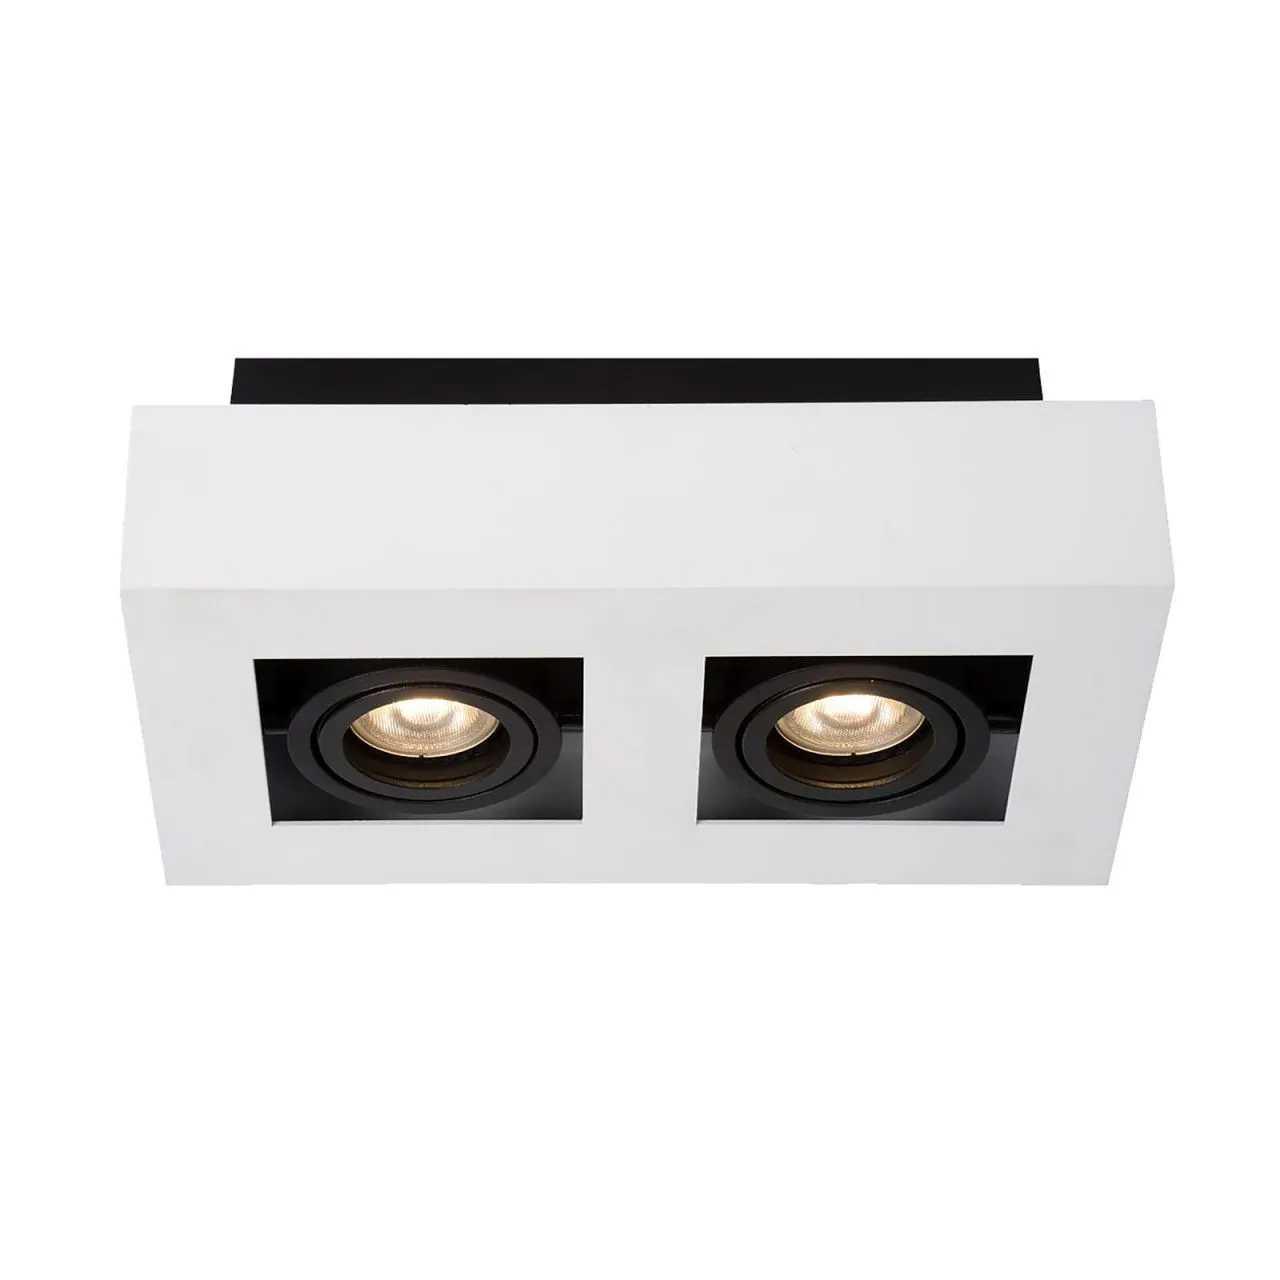 Casemiro, nowoczesna lampa natynkowa, biało czarna, GU10, IT8001S2-WH/BK